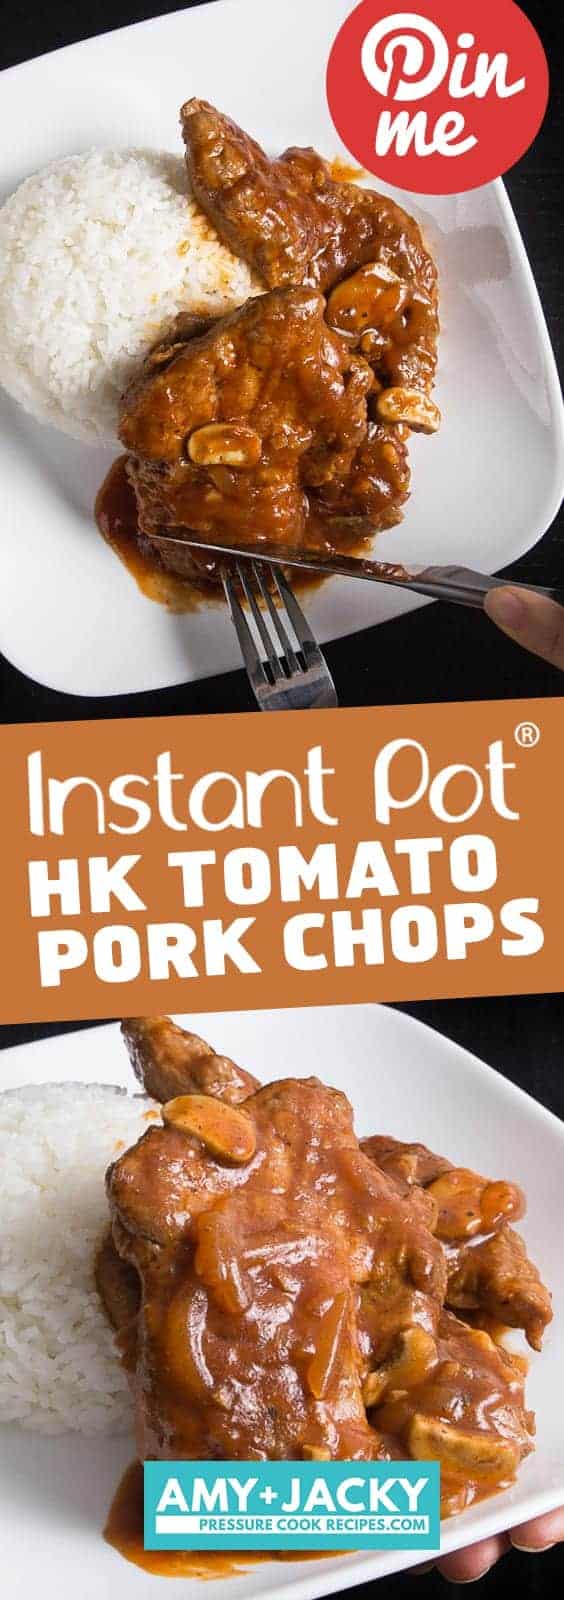 Instant Pot Pork Chops | Instapot Pork Chops | Instant Pot Pork | Pressure Cooker Pork Chops | Pork Recipes | #instantpot #instantpotrecipes #recipes #chinese #pork